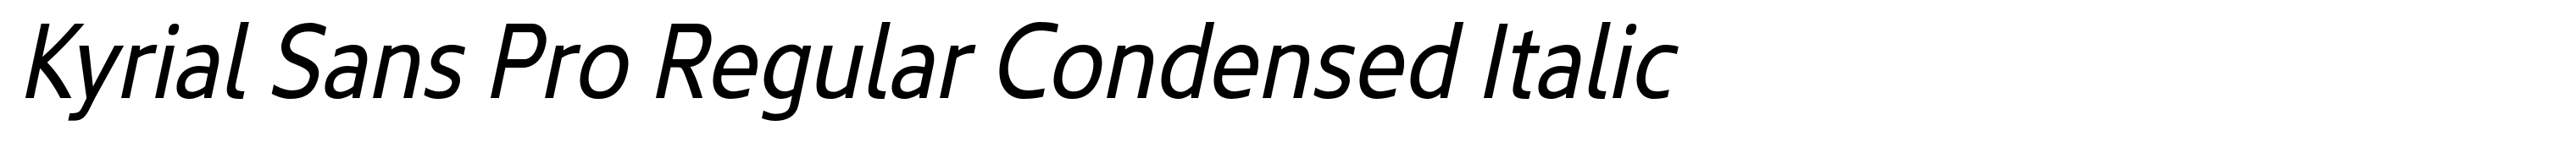 Kyrial Sans Pro Regular Condensed Italic